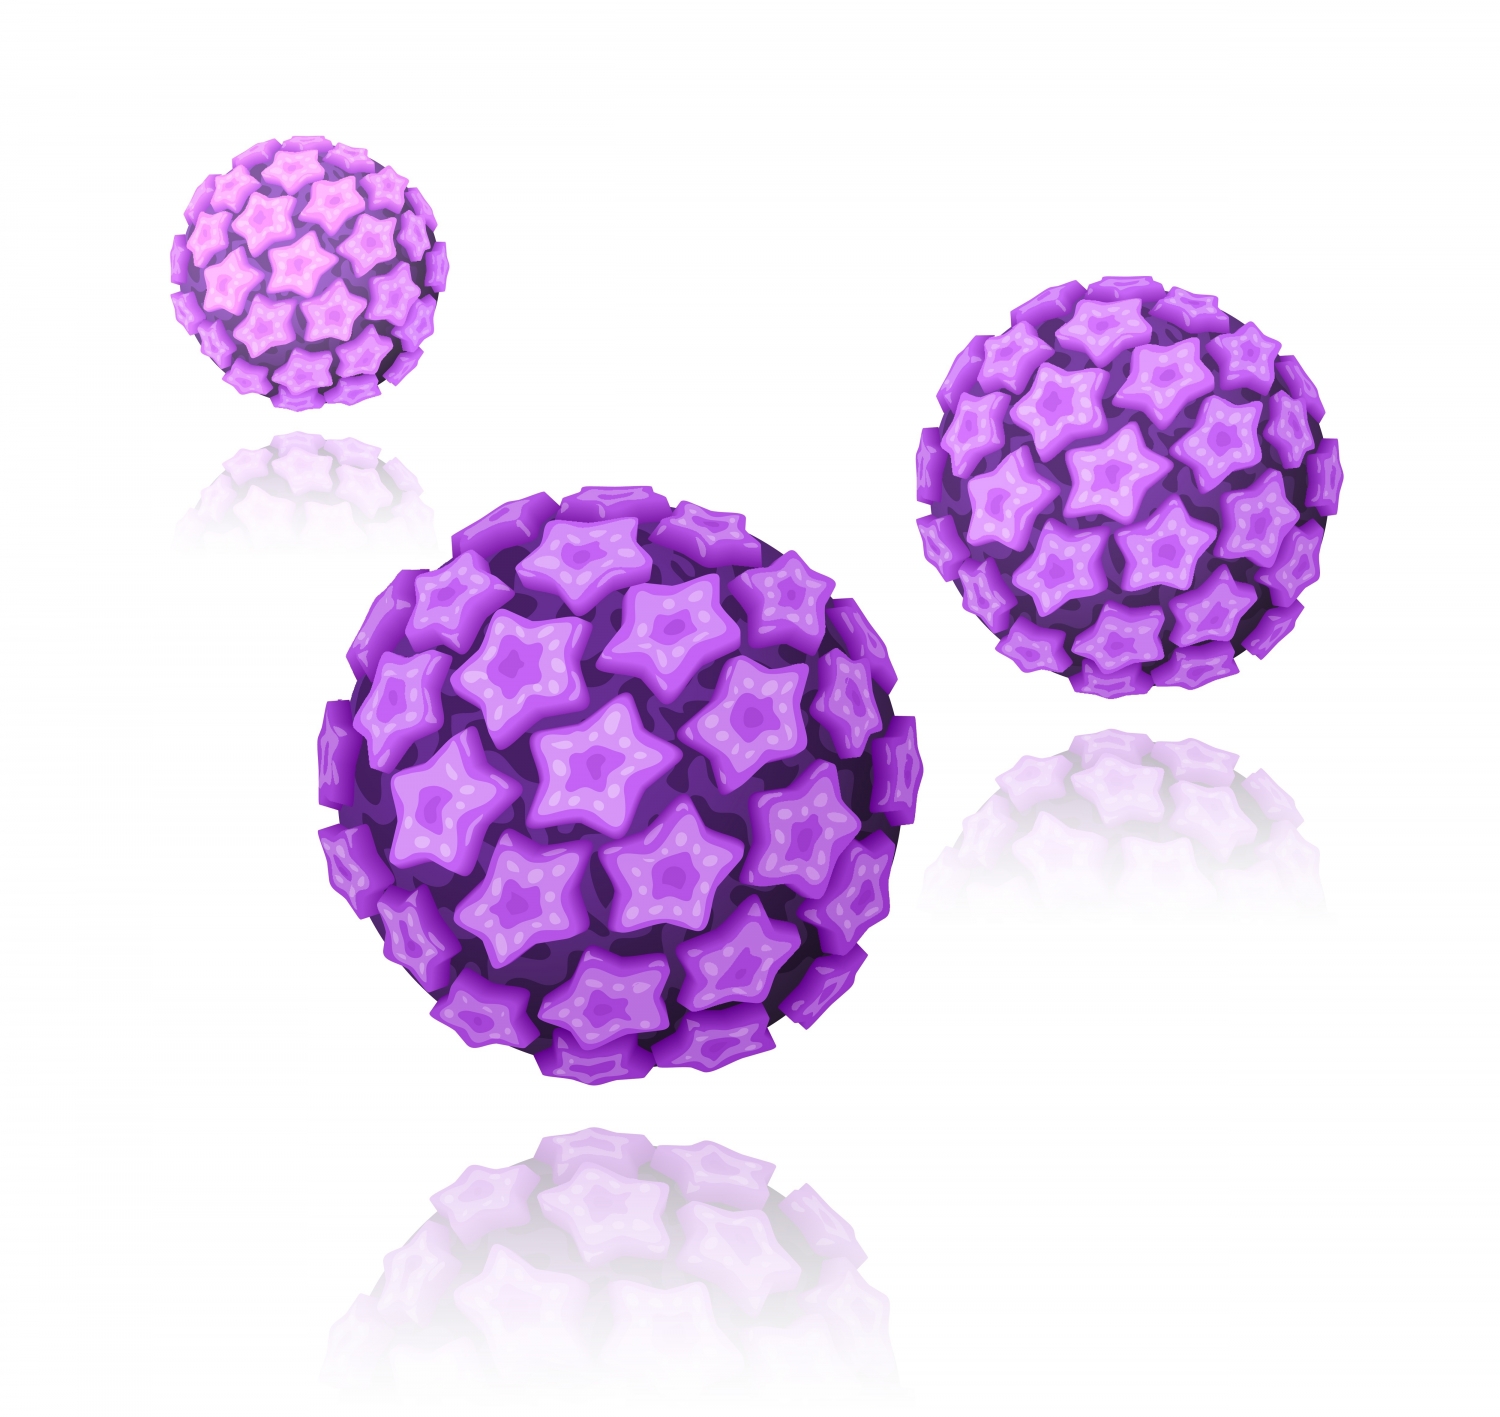 Hpv magas kockázatú hamis pozitív - HPV tévhitek és tények